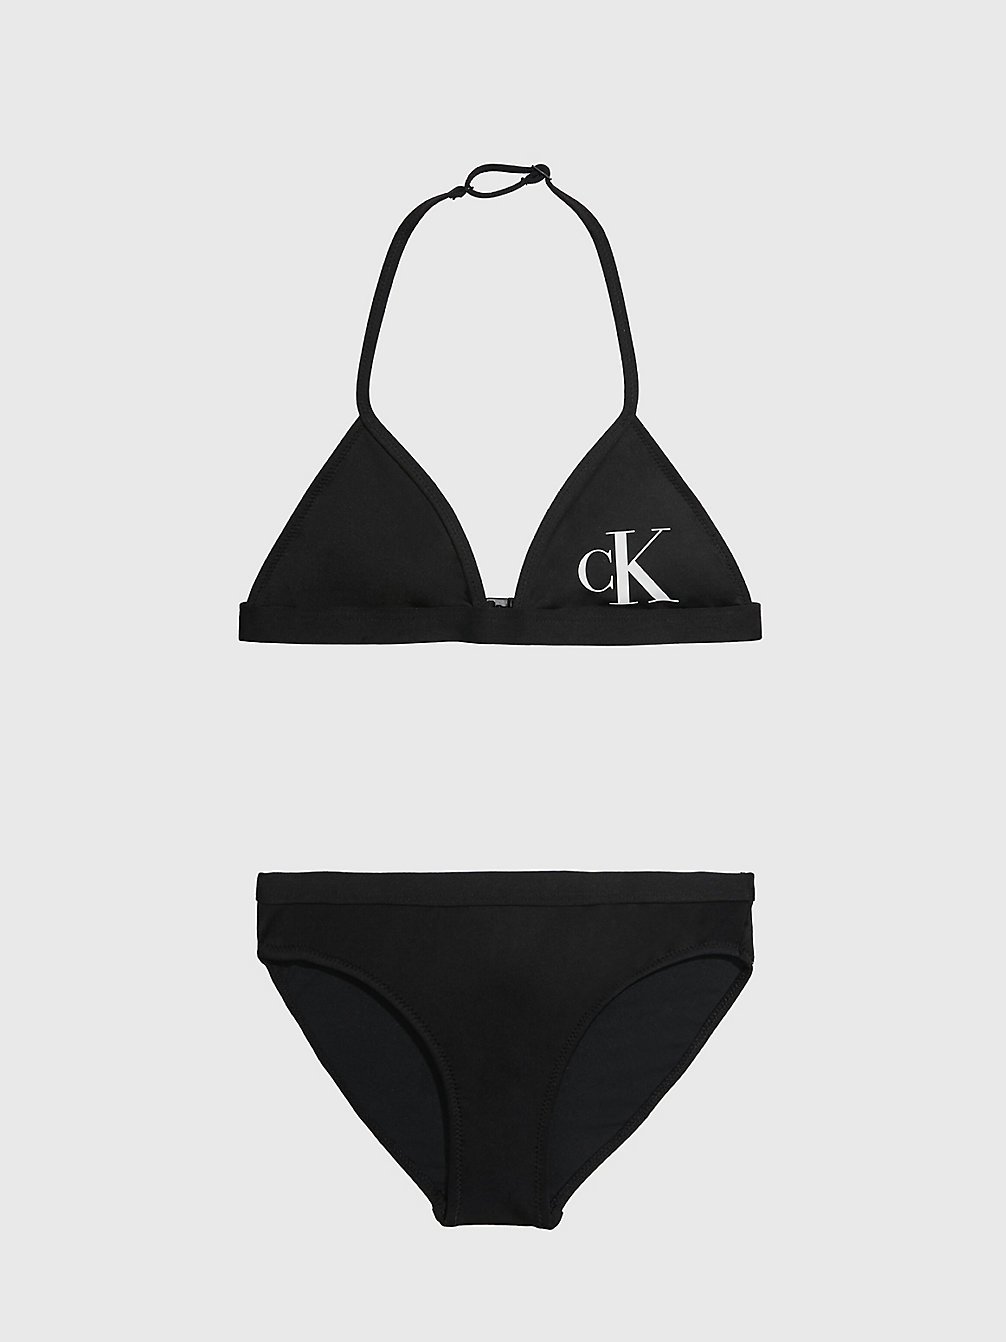 PVH BLACK > Triangelbikini Voor Meisjes - CK Monogram > undefined girls - Calvin Klein